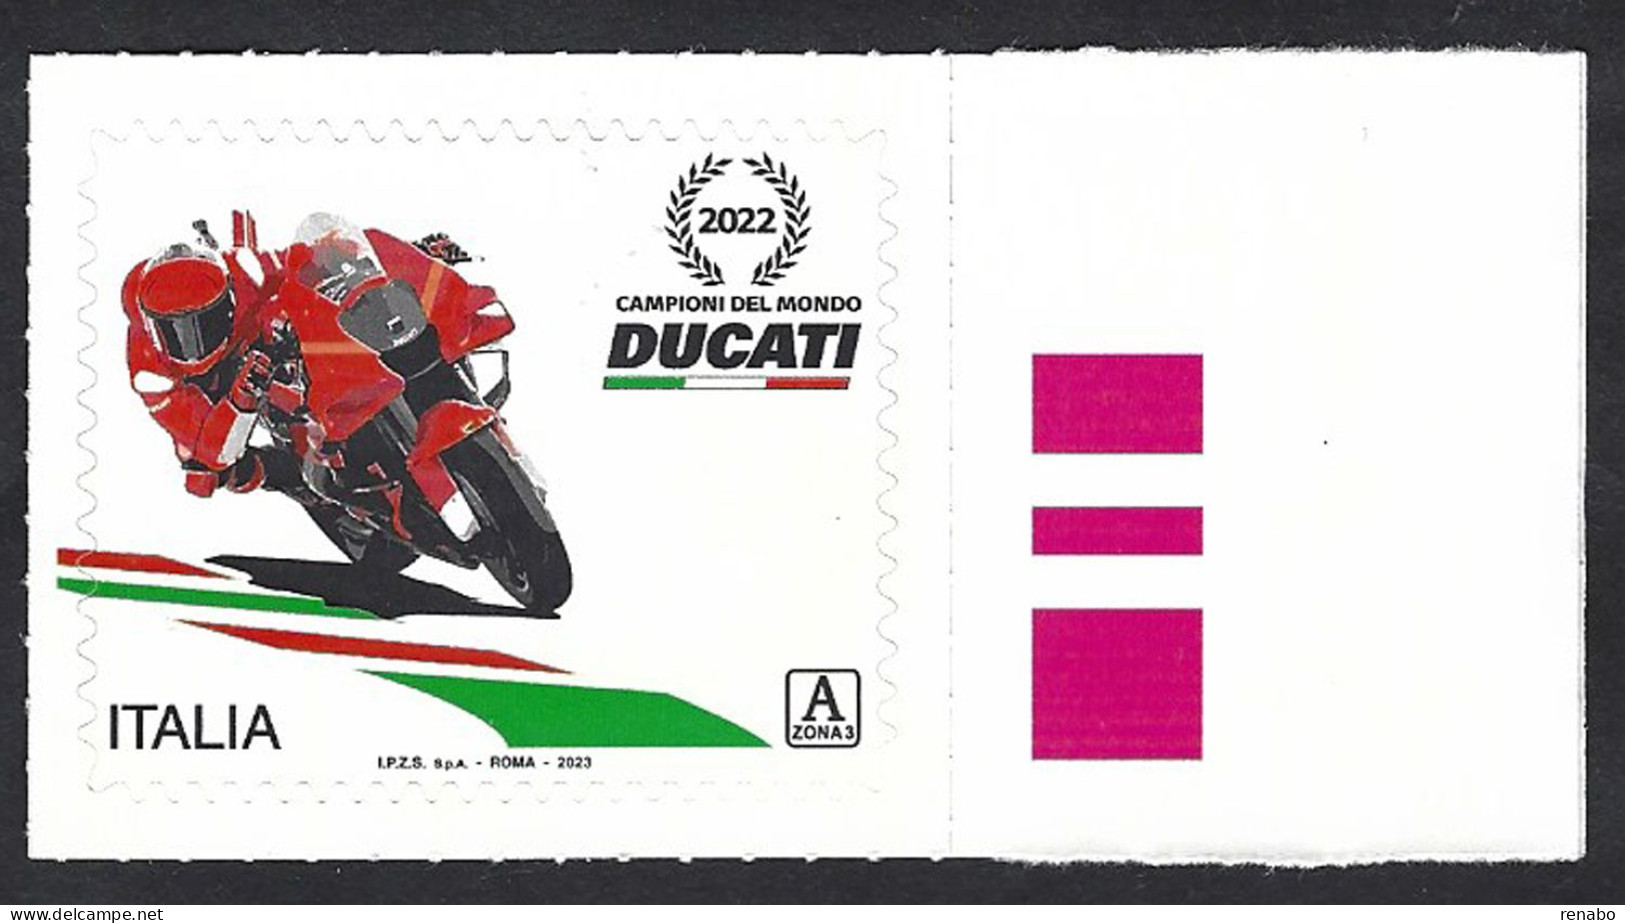 Italia, Italy, Italien, Italie 2023; Moto DUCATI Desmosedici GP Wins The 2022 Motogp World Championship. Rate "A Zone 3" - Moto